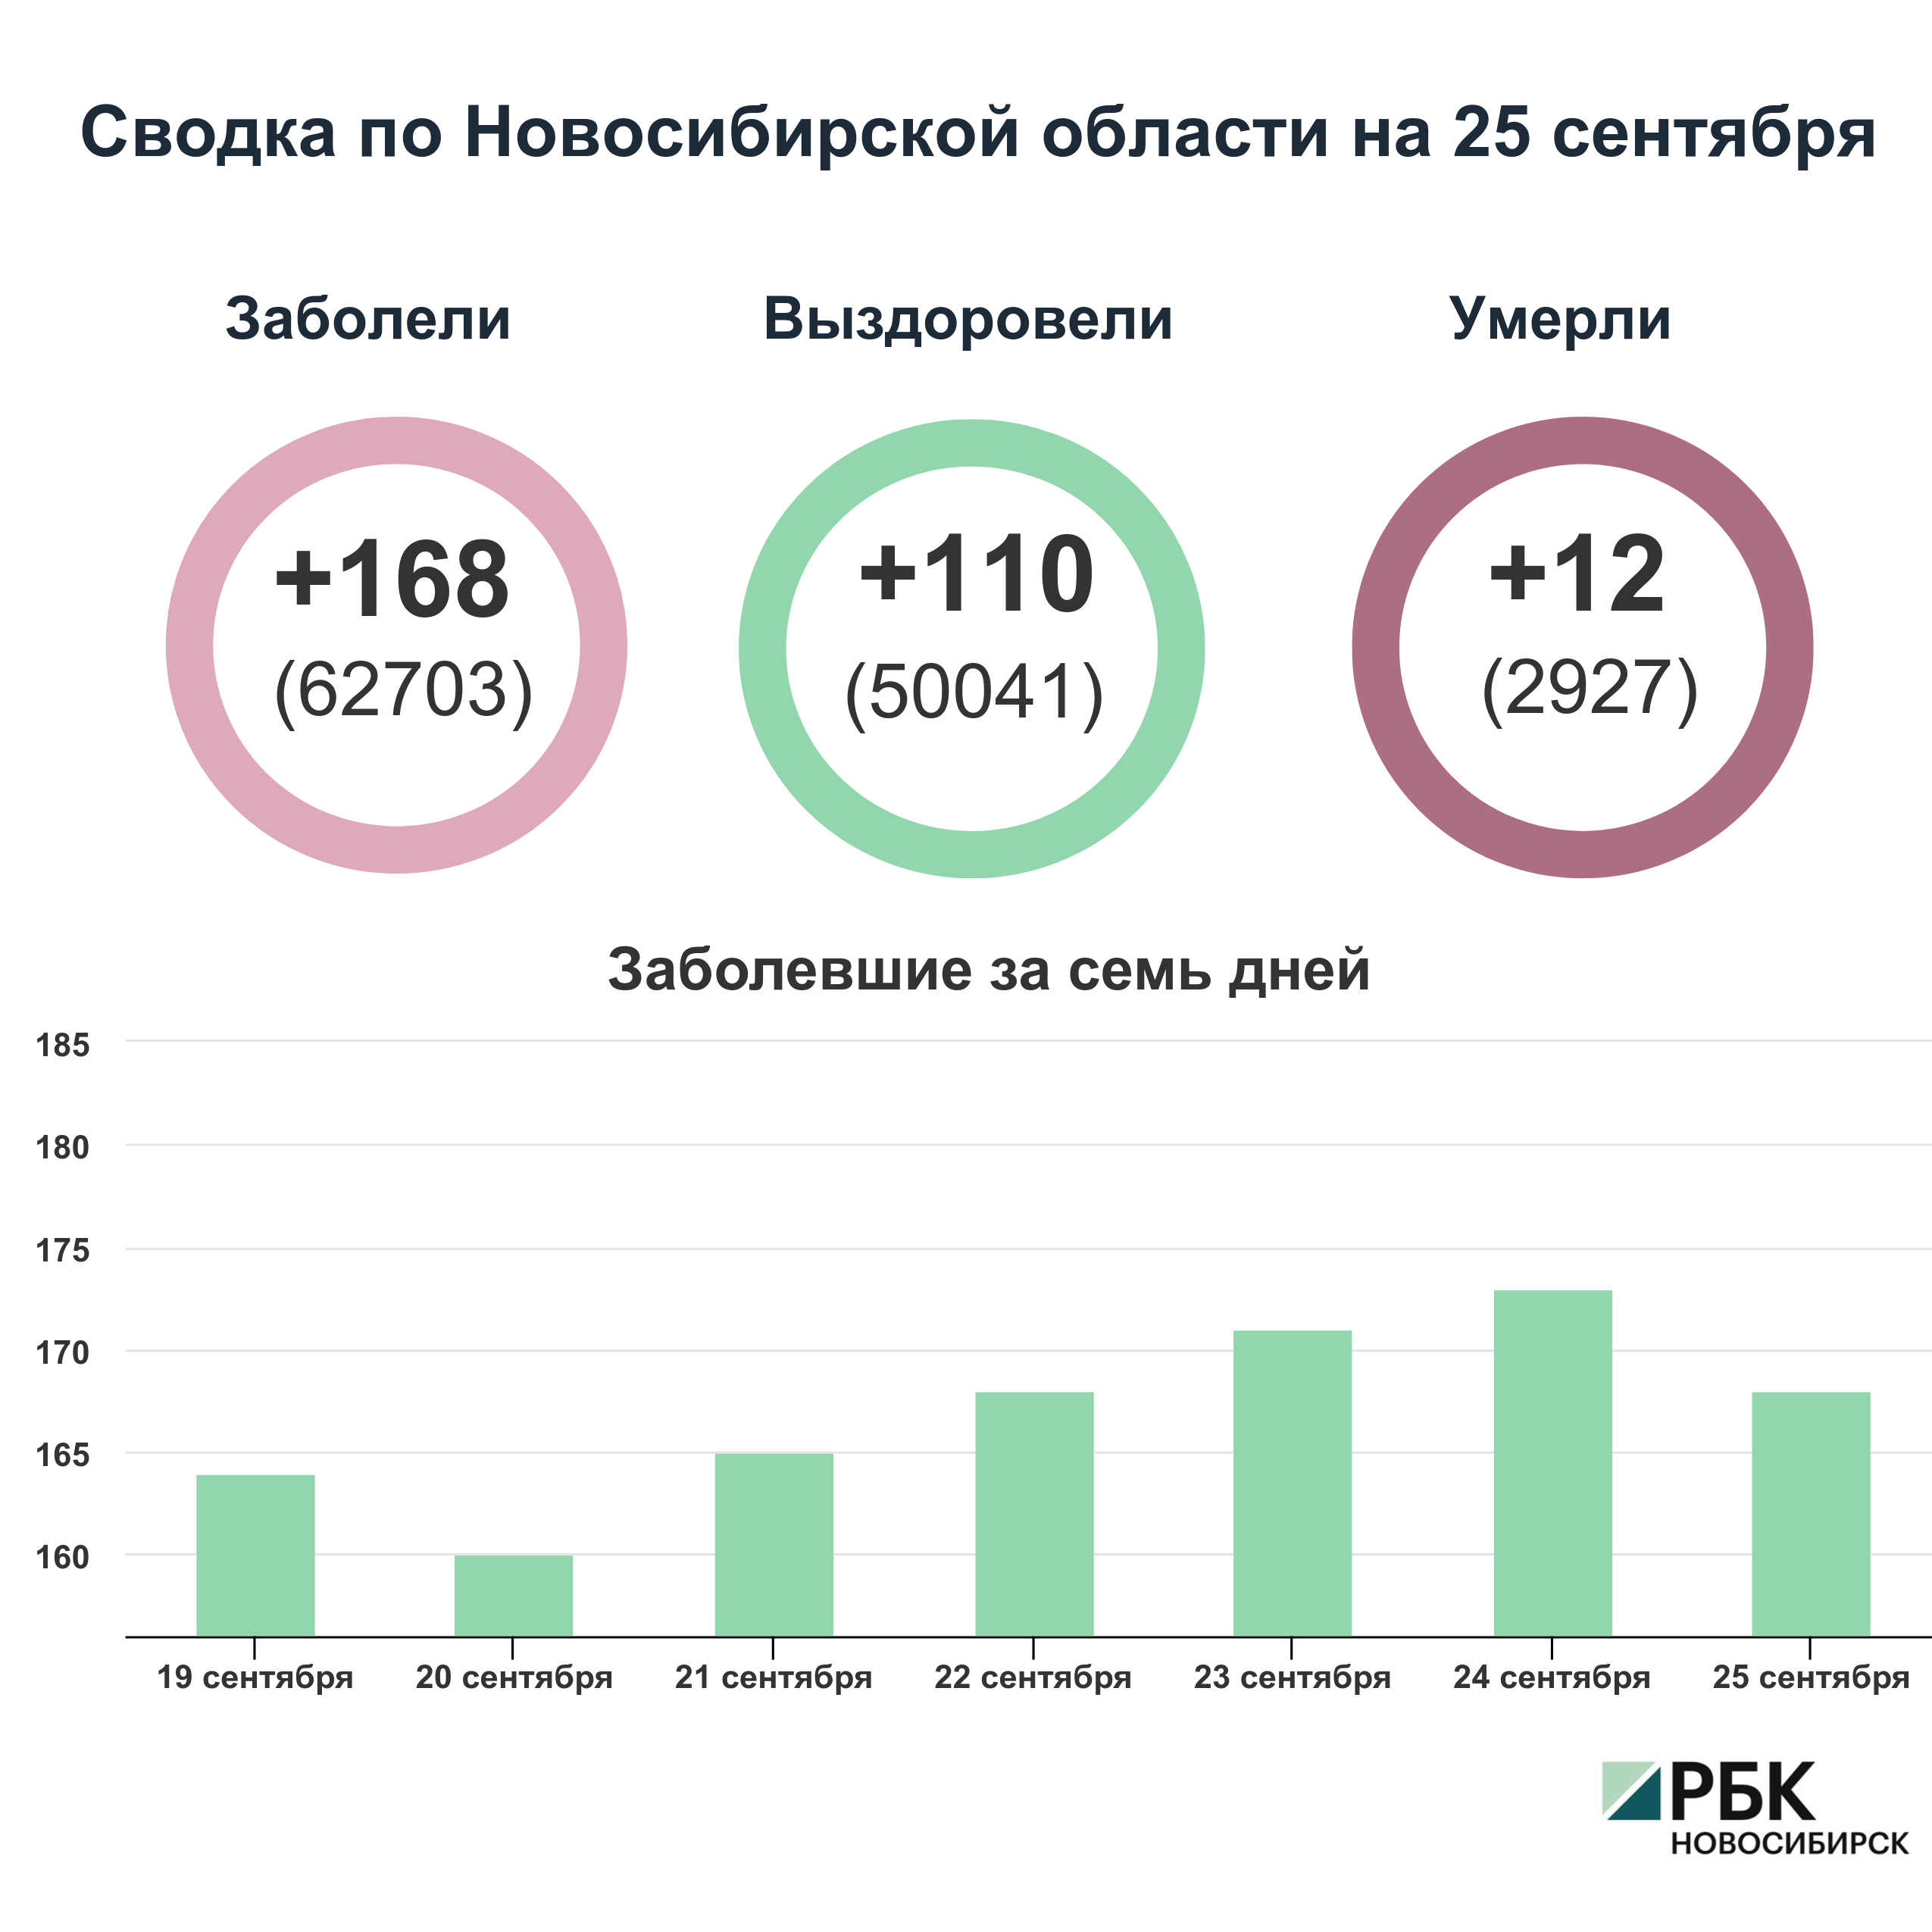 Коронавирус в Новосибирске: сводка на 25 сентября